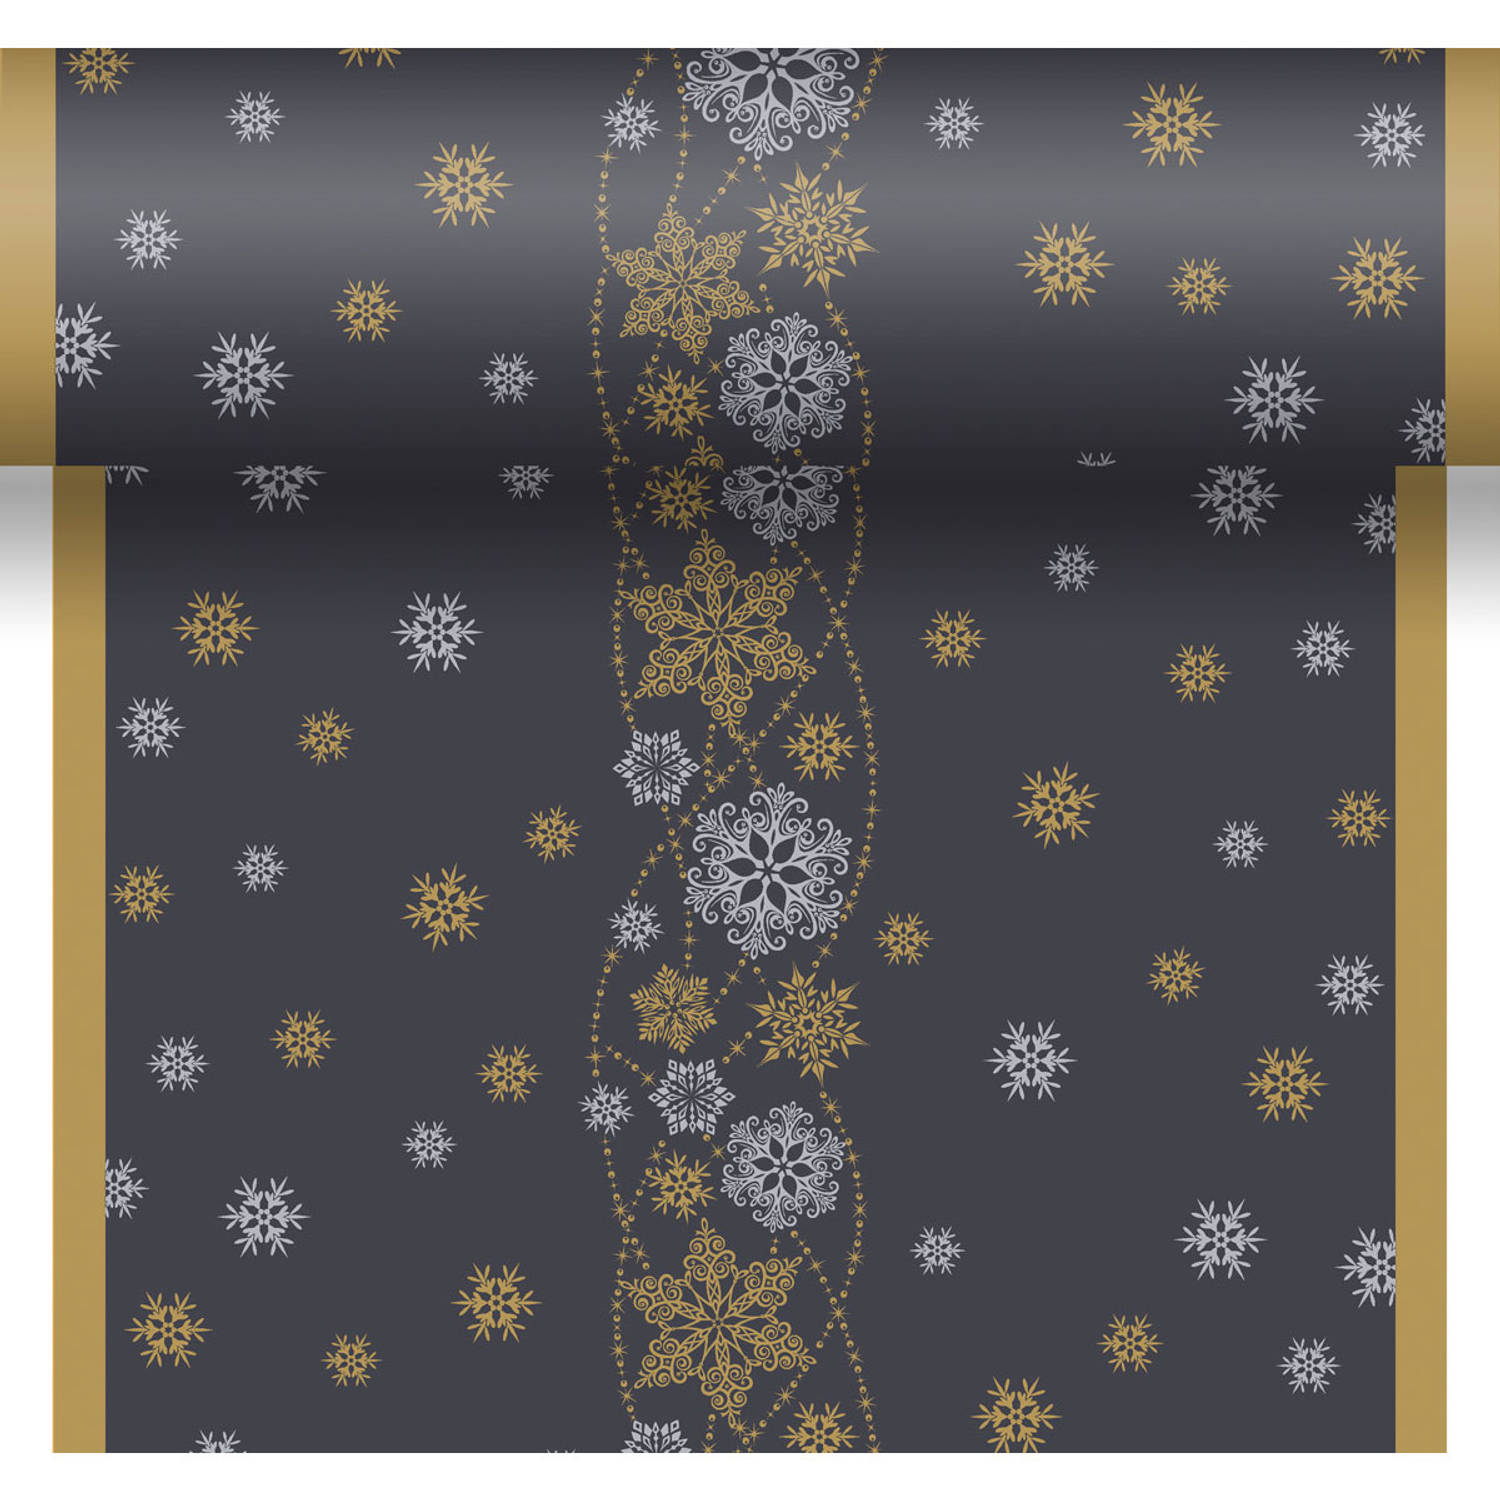 Kerst thema tafellopers/placemats zwart met glitter sneeuwvlokken 40 x 480 cm - Kerstdiner tafeldecoratie versieringen